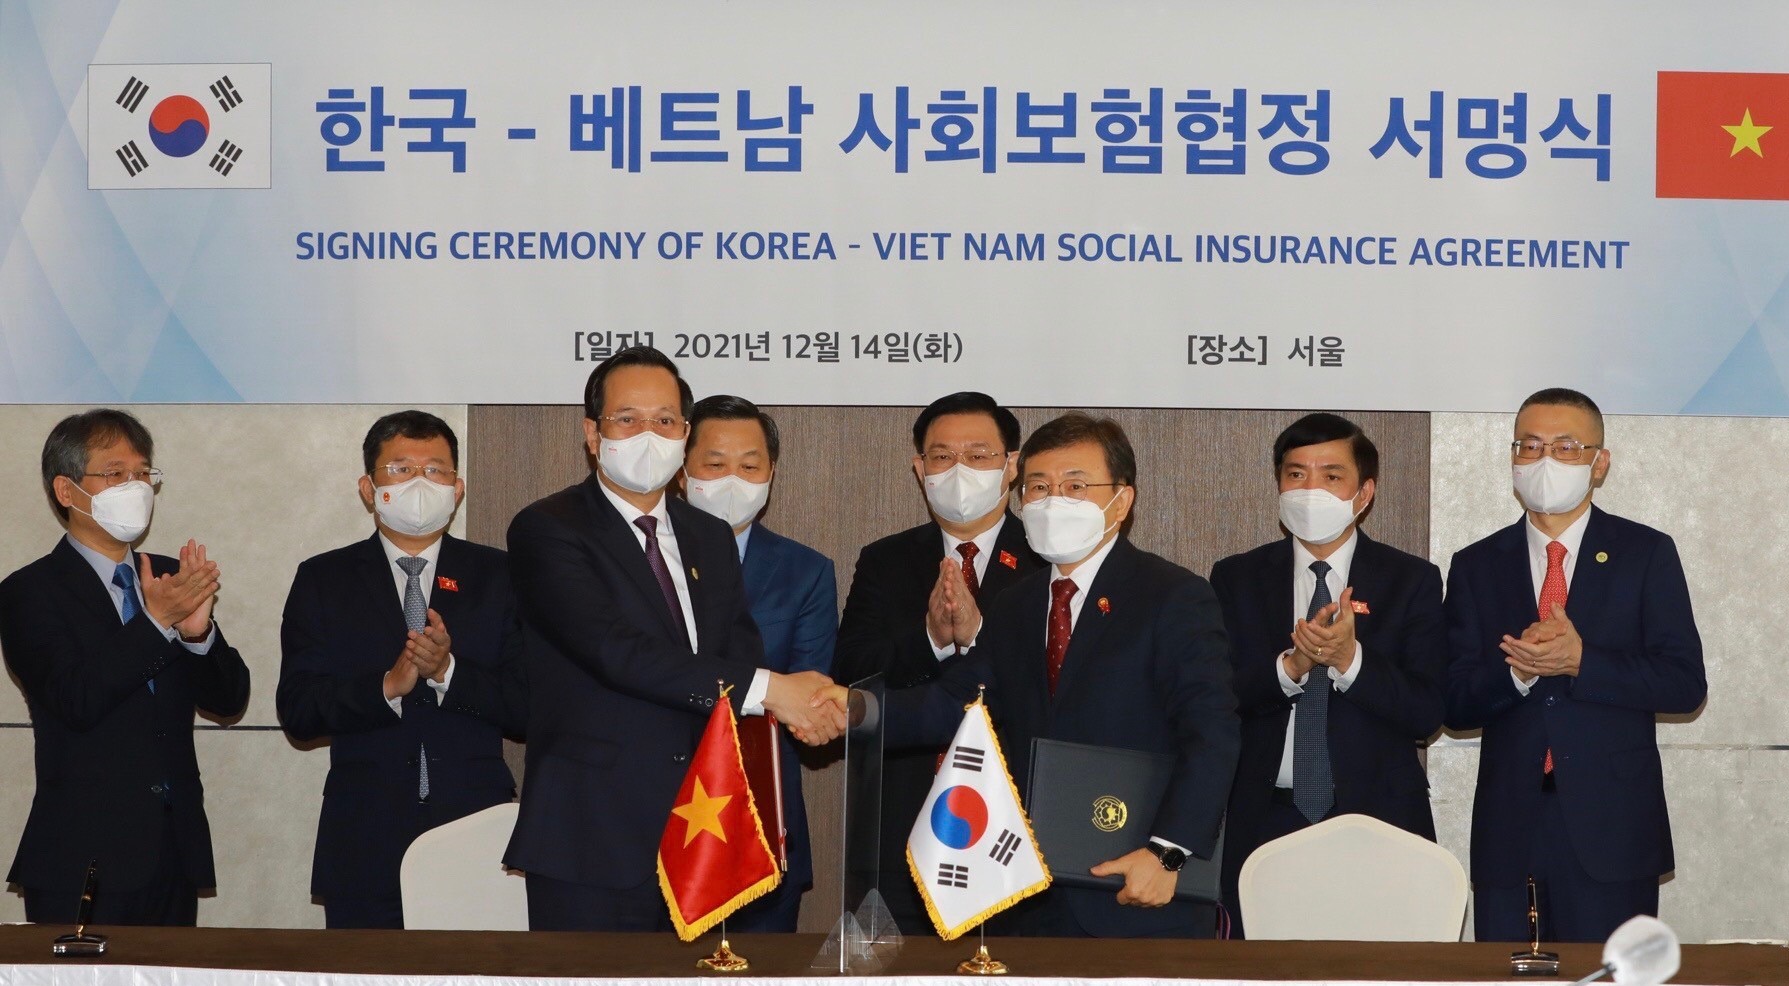 Lễ ký kết Hiệp định về Bảo hiểm xã hội giữa Việt Nam và Hàn Quốc